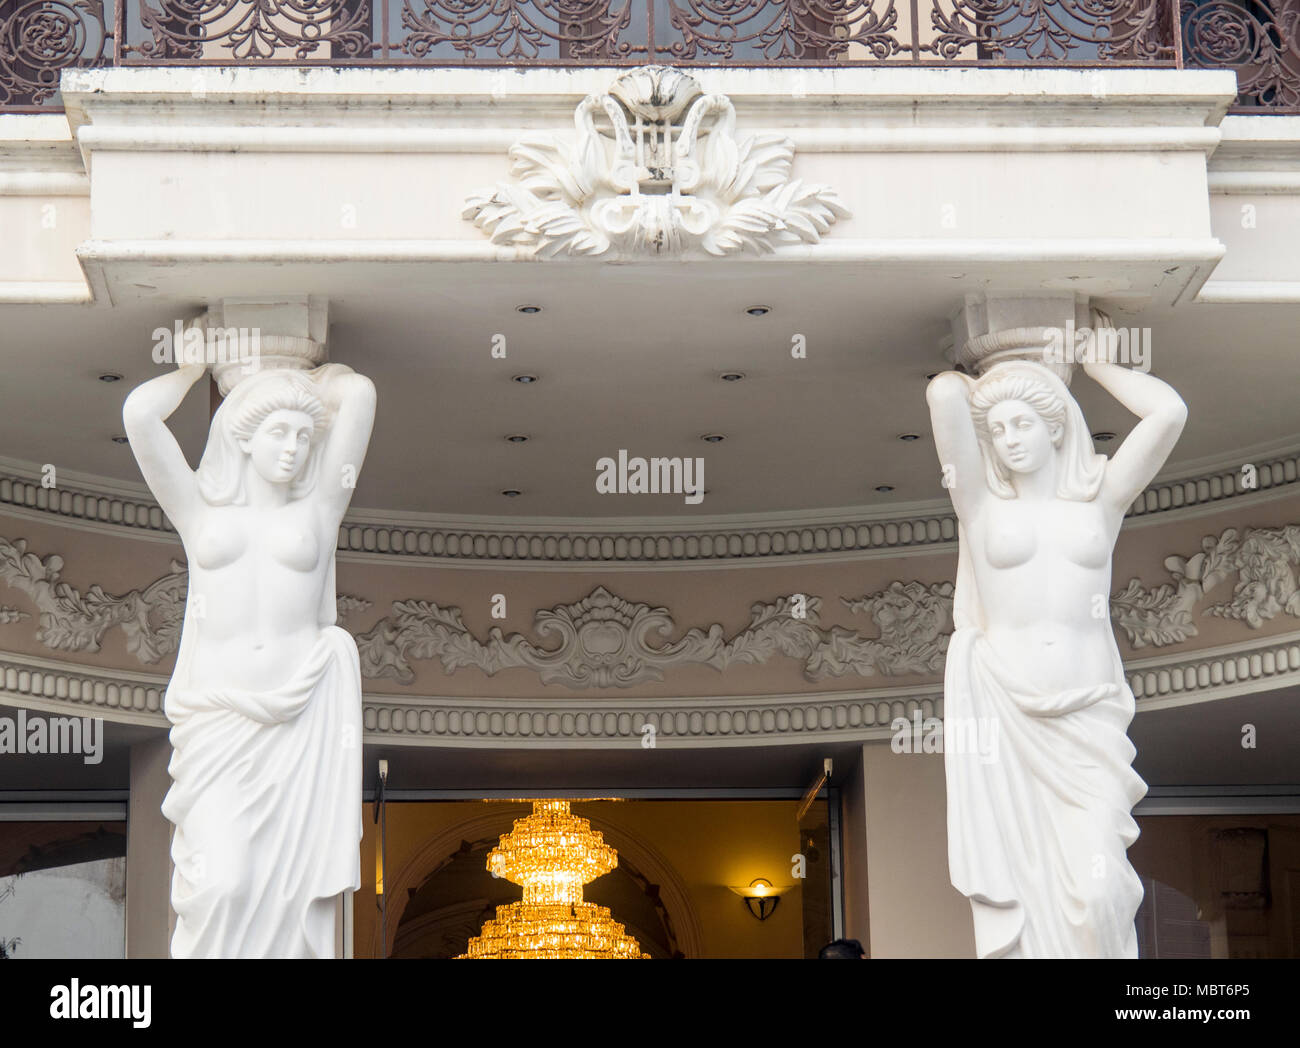 Zwei Statuen von Frauen, halten die Vorhalle des Stadttheater von Ho Chi Minh City oder Saigon Oper, Vietnam. Stockfoto